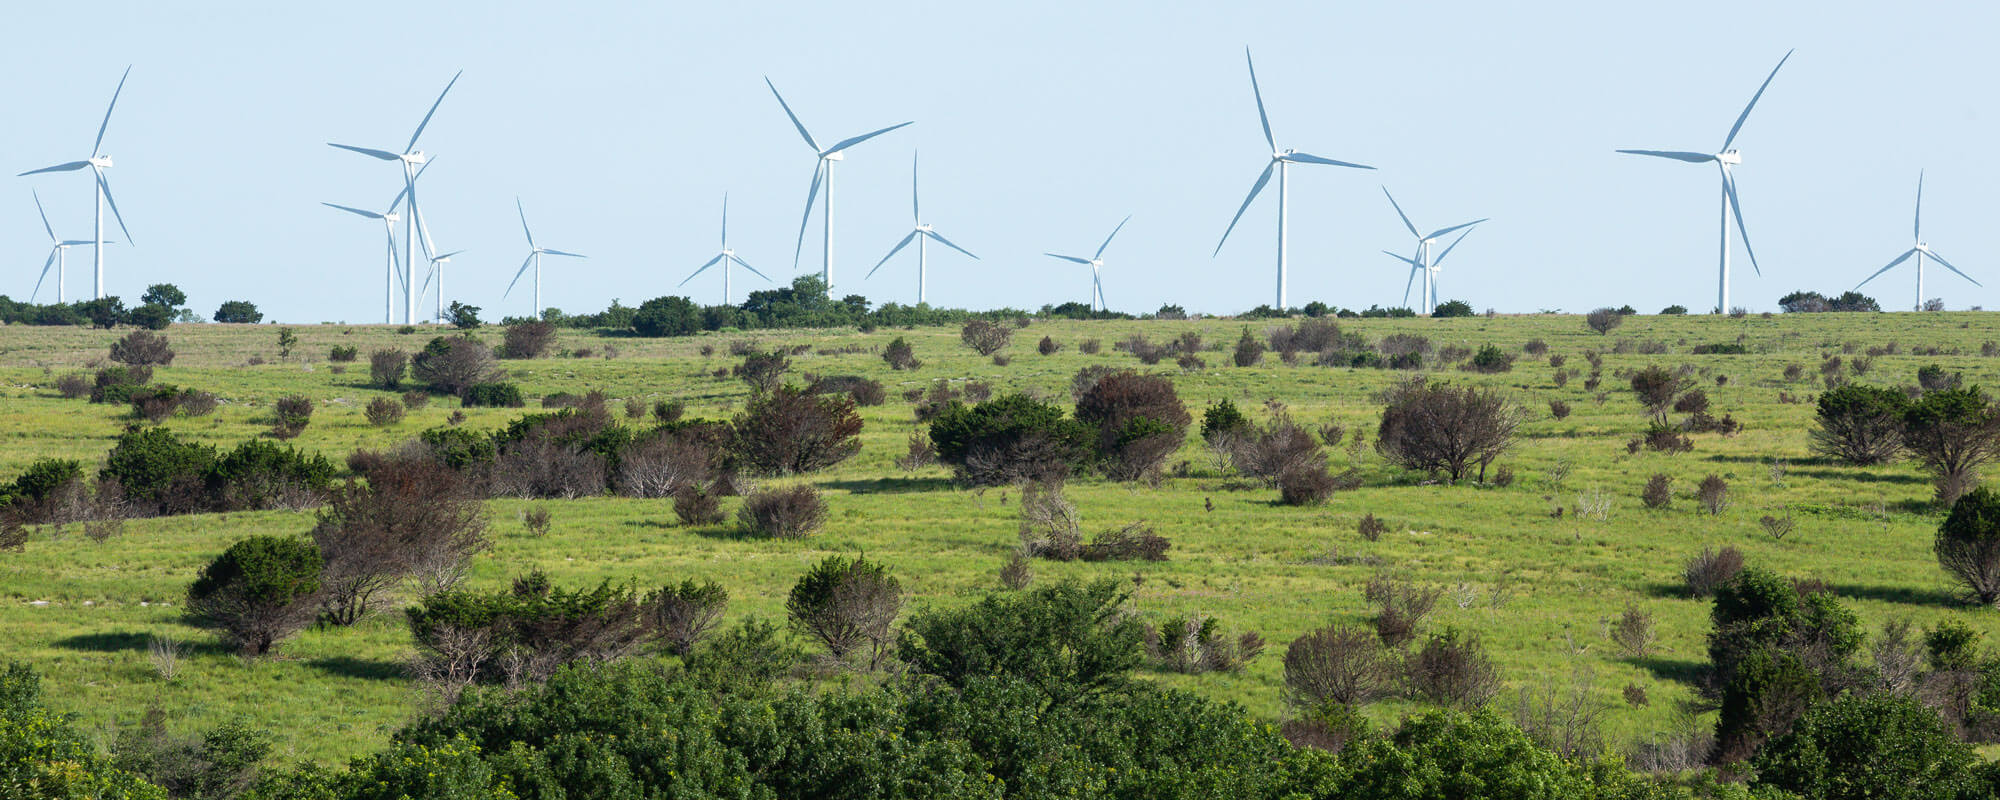 Rangeland with windmills